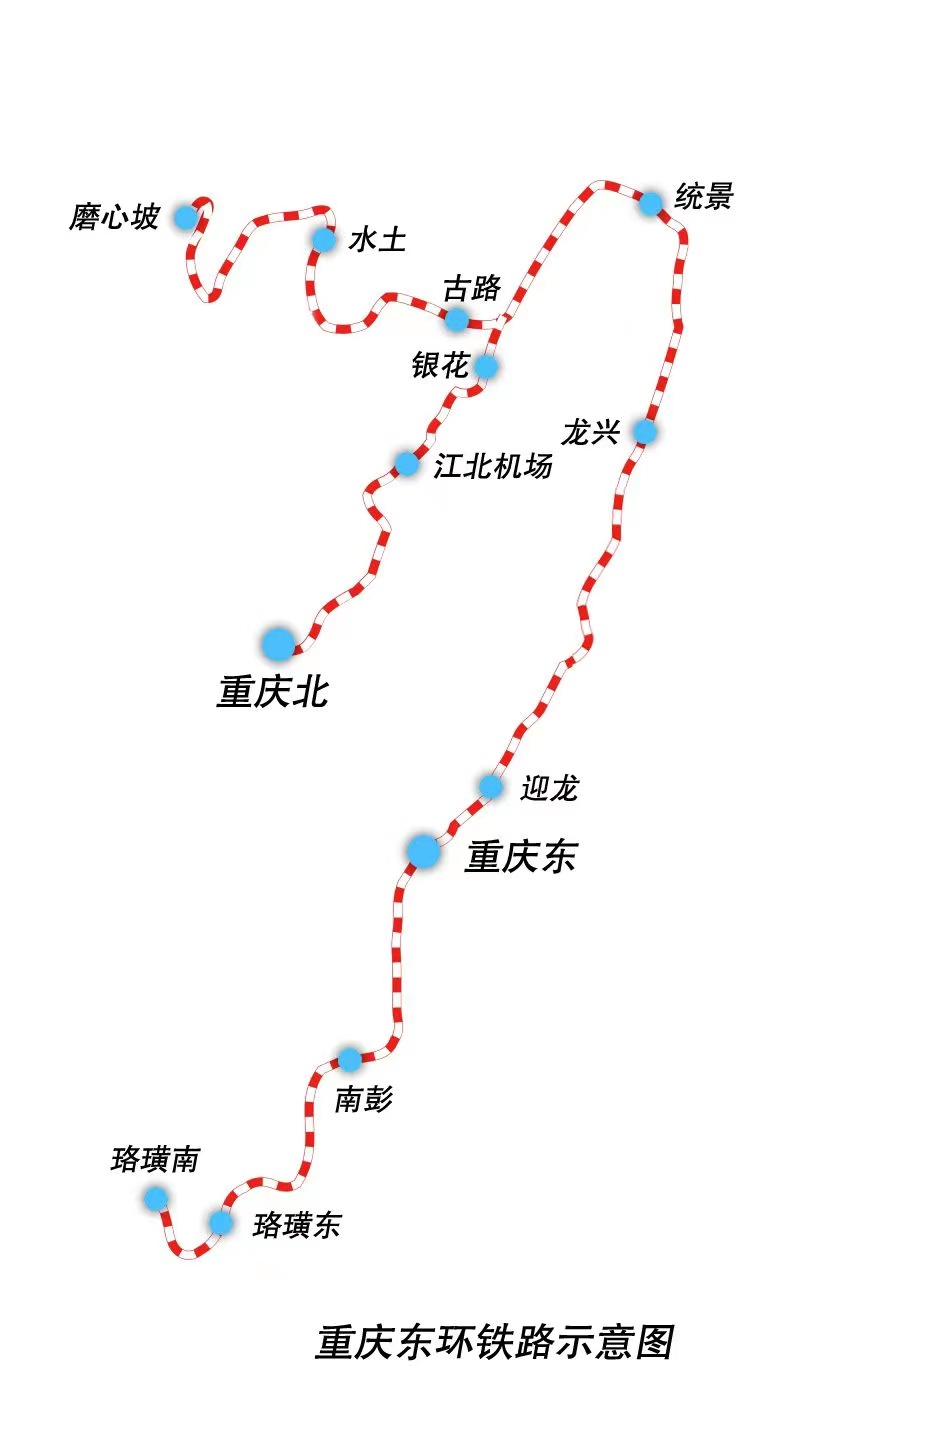 重庆东环铁路图片